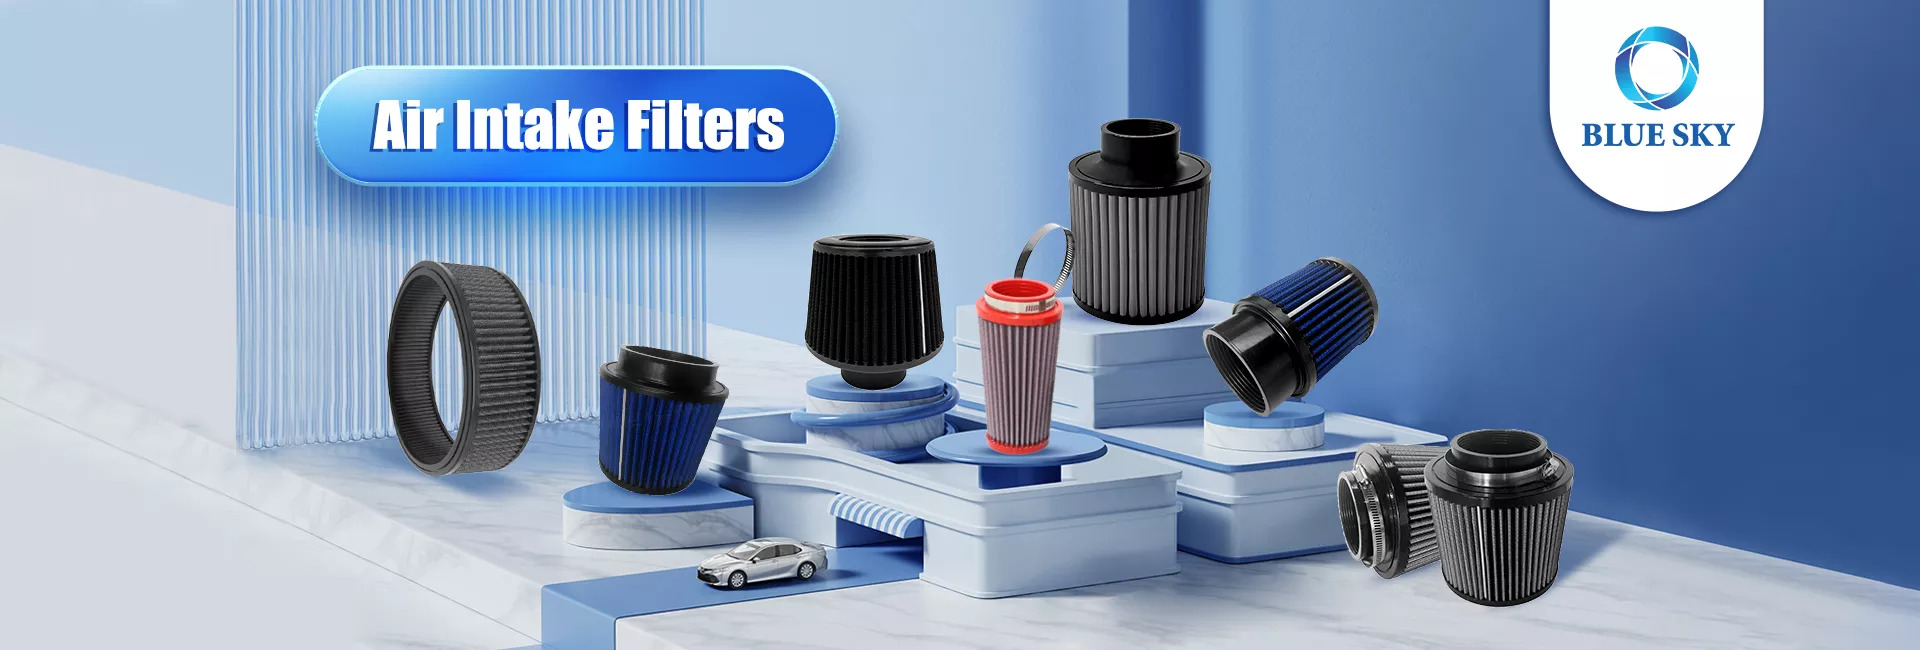 Productos calientes del filtro de entrada de aire del filtro automático de las ventas del cielo azul